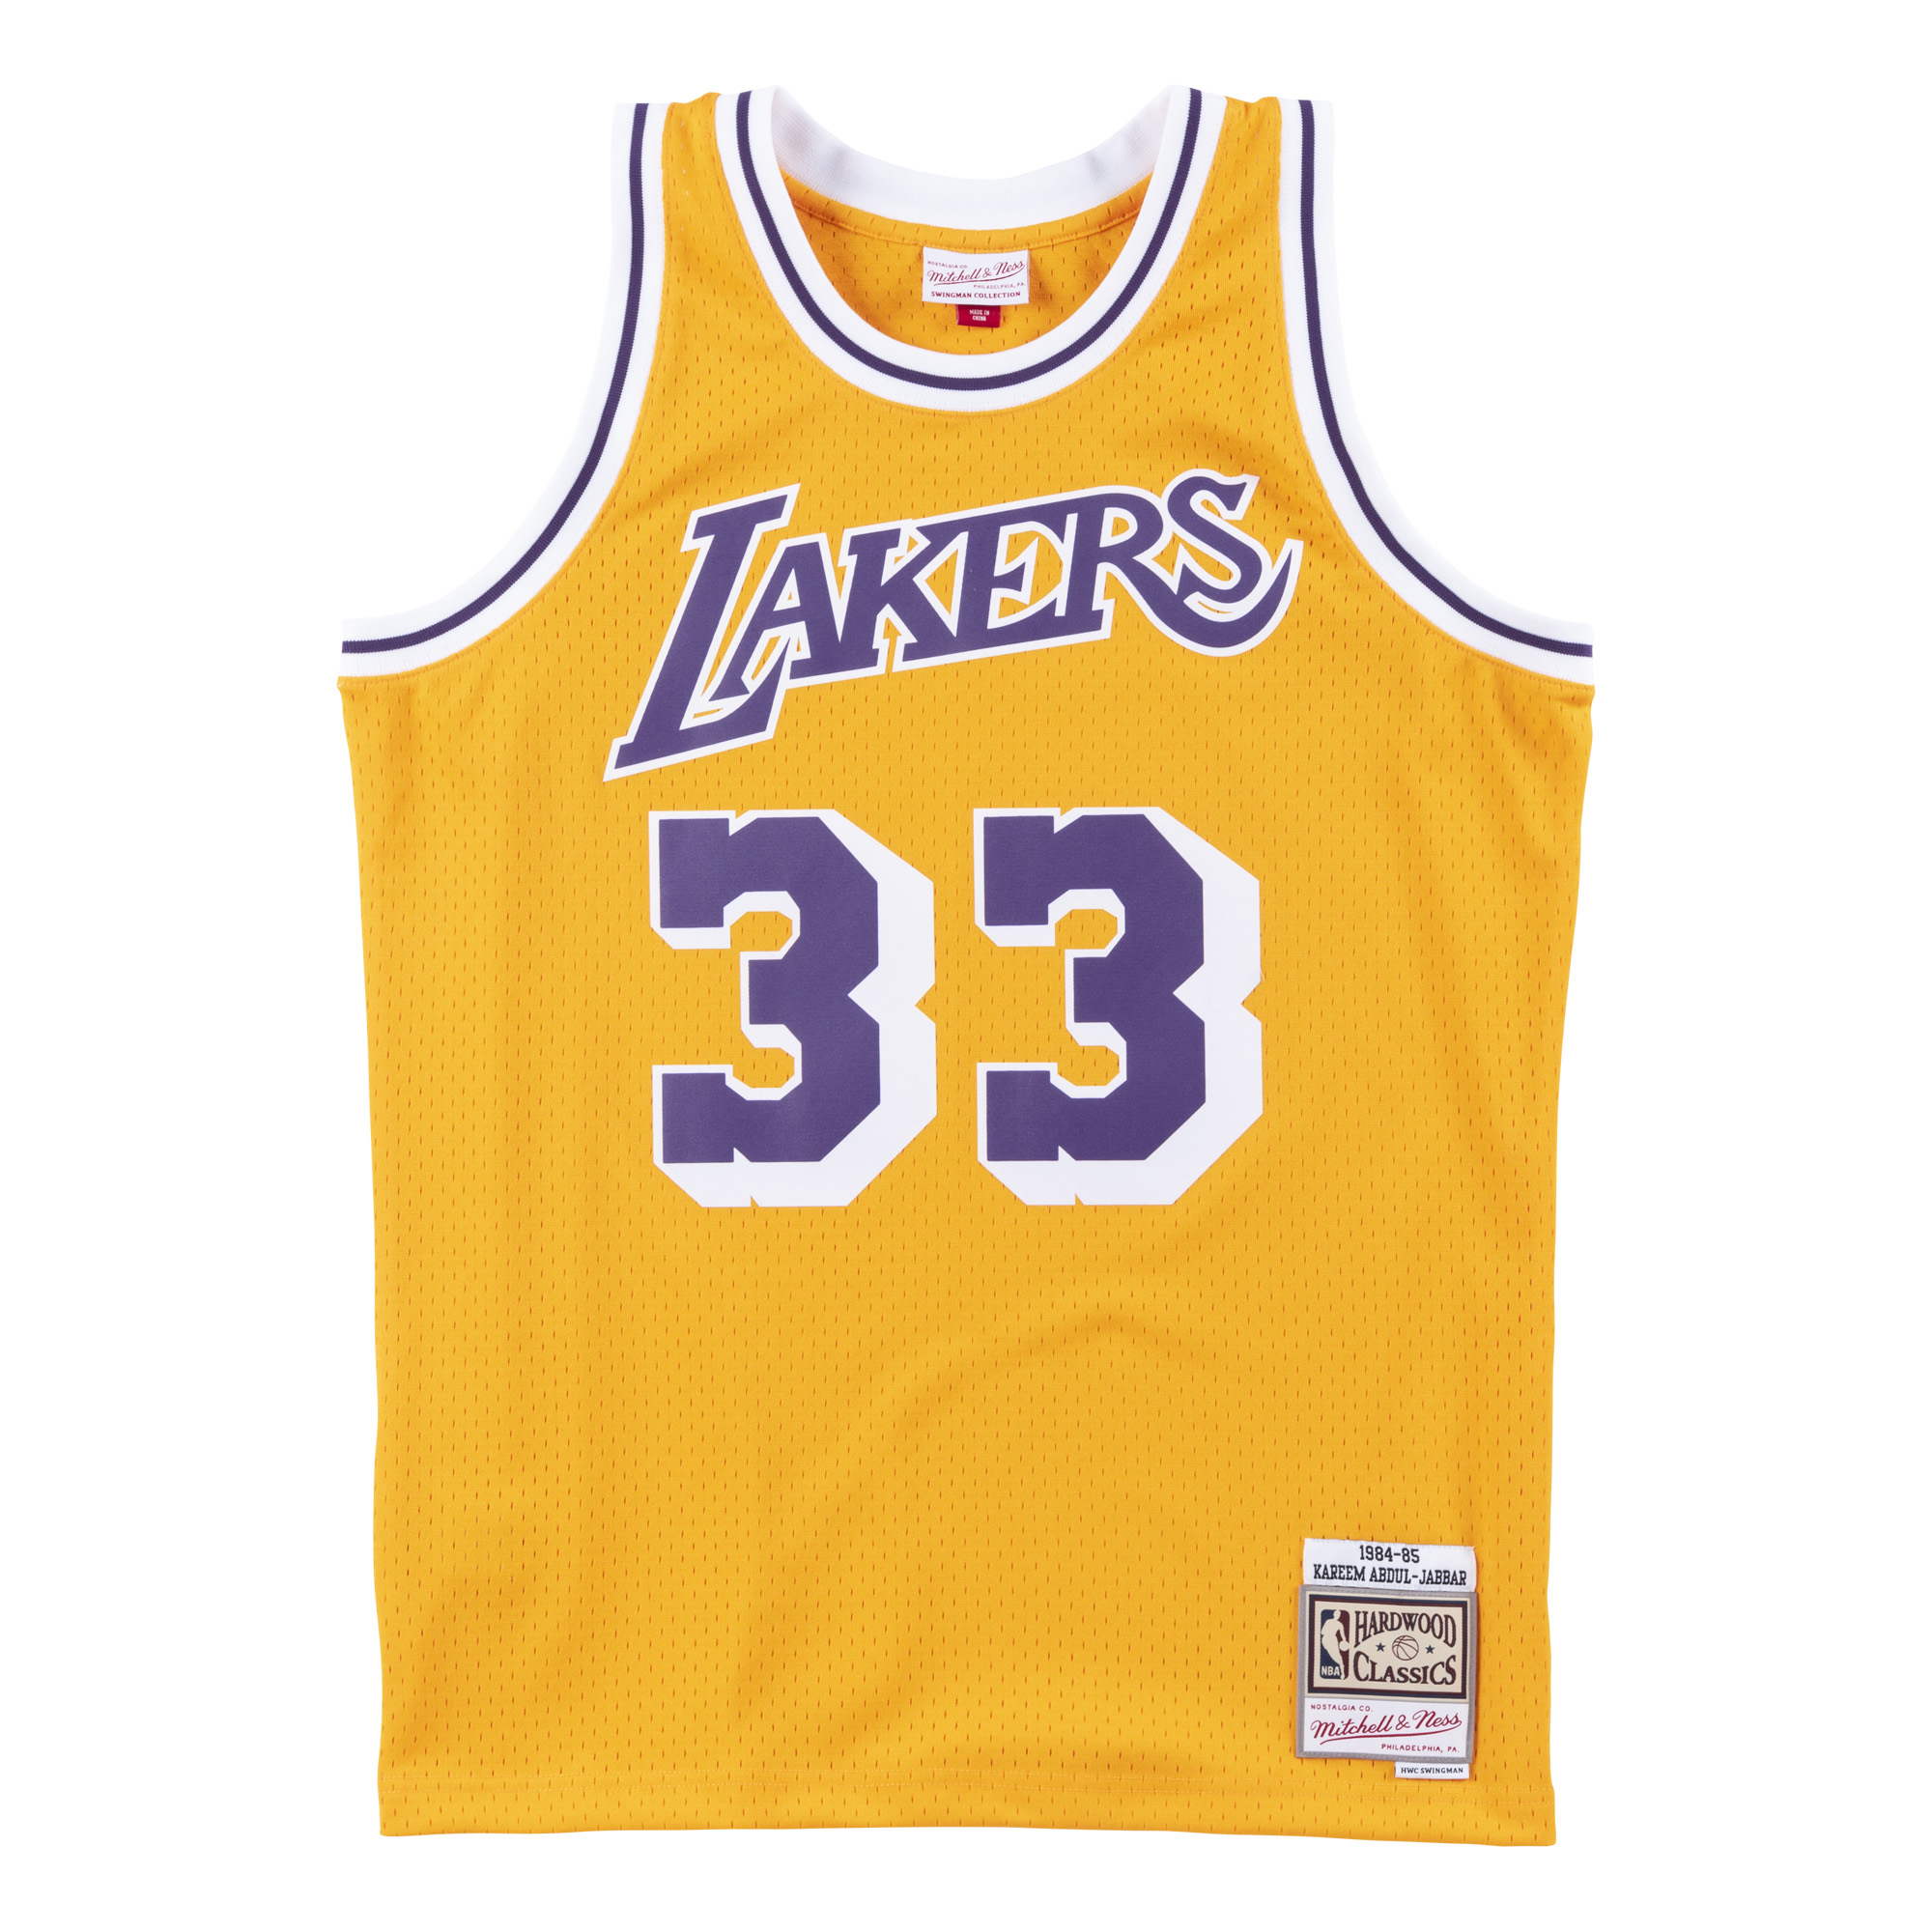 Mitchell & Ness NBA Swingman Jersey Los Angeles Lakers Kareem Abdul Jabbar - Męskie - Jersey Mitchell & Ness - Żółty - SMJYAC18110-LALLTGD84KAB - Rozm